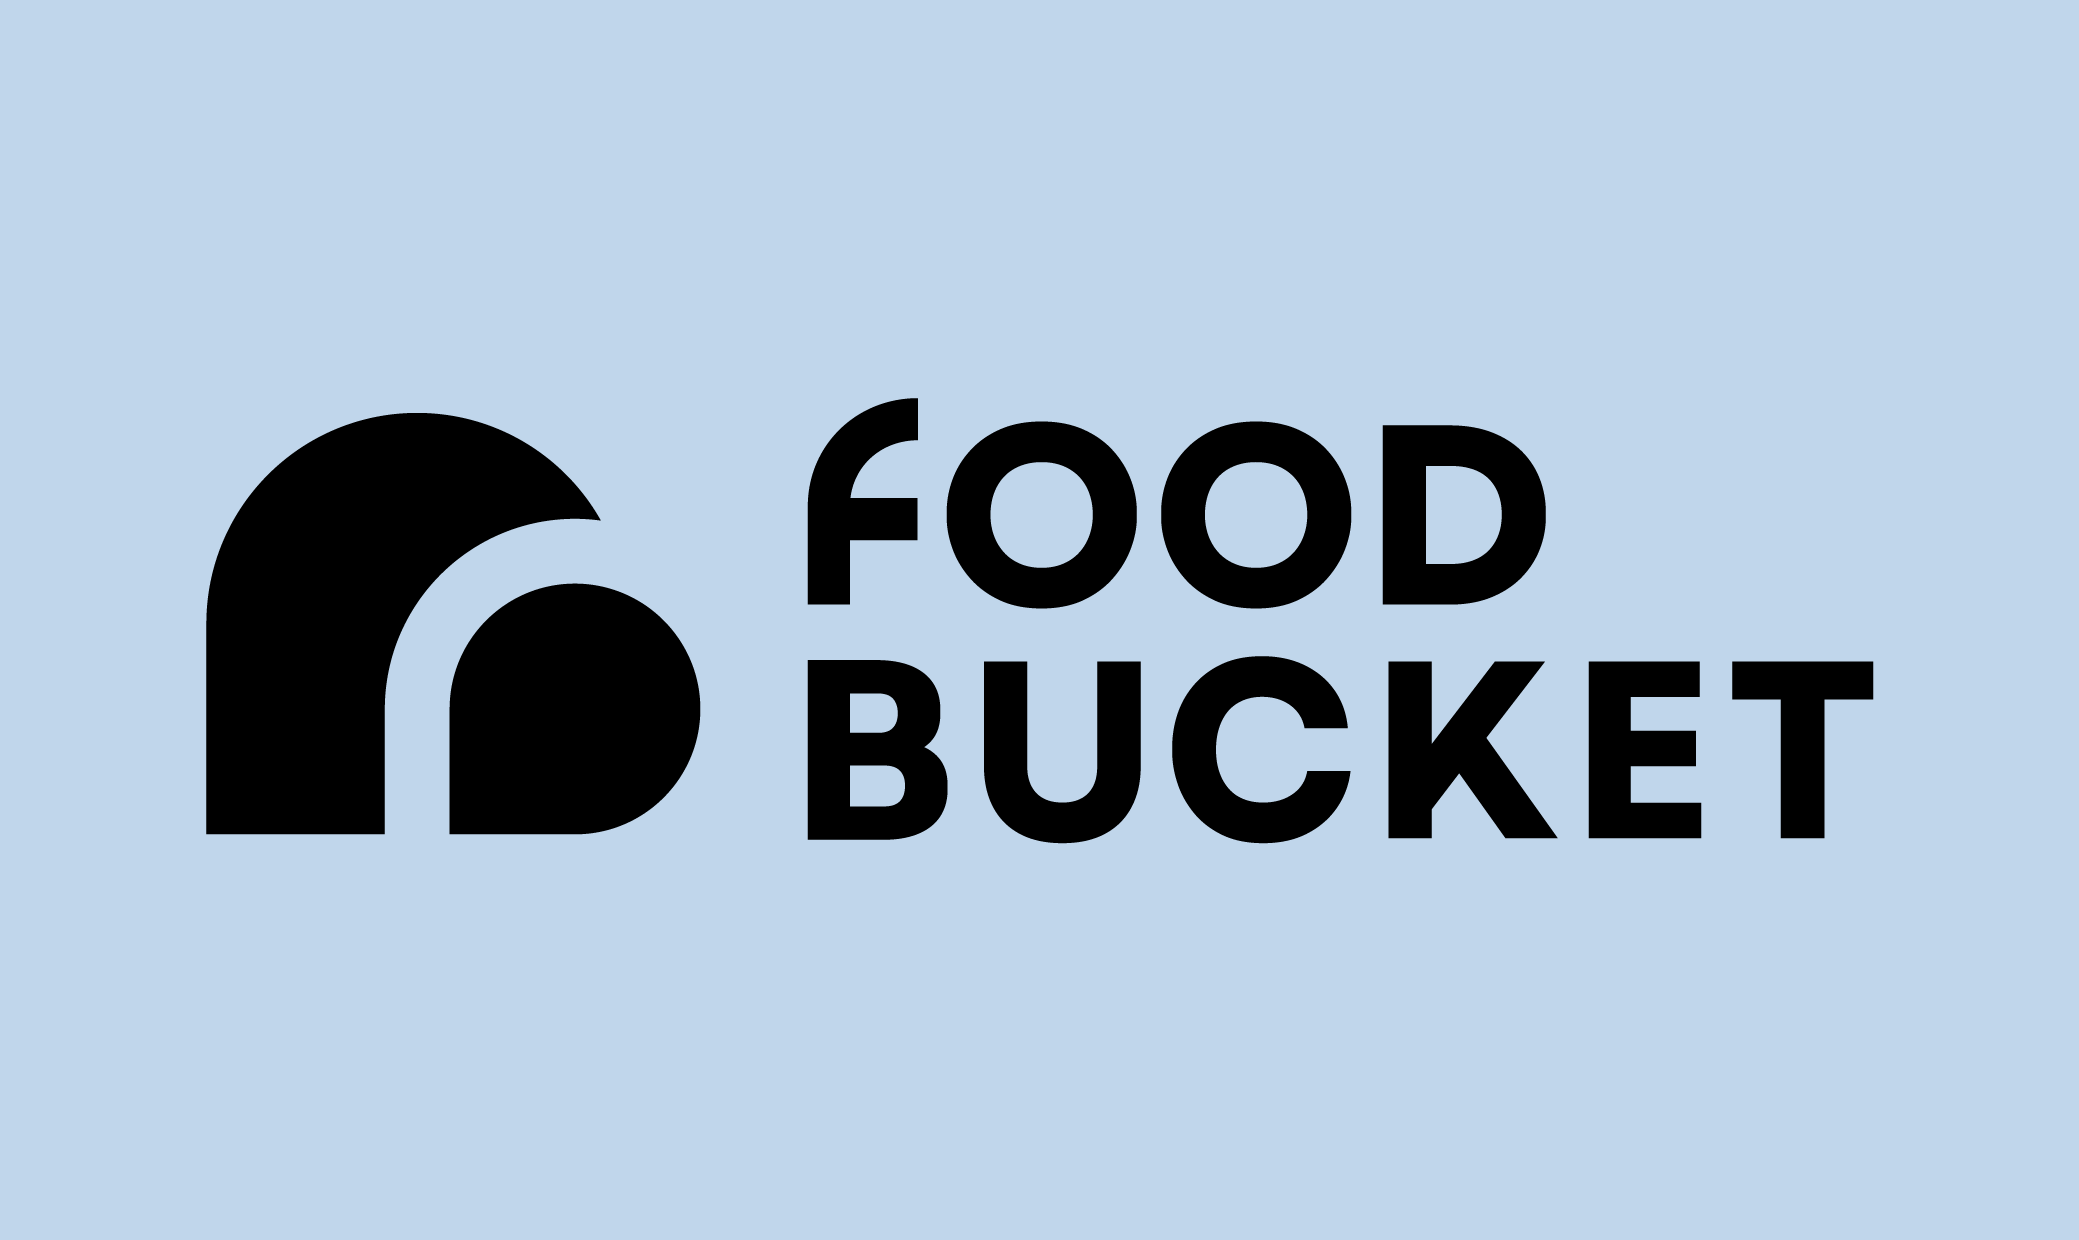 Food Bucket Branding